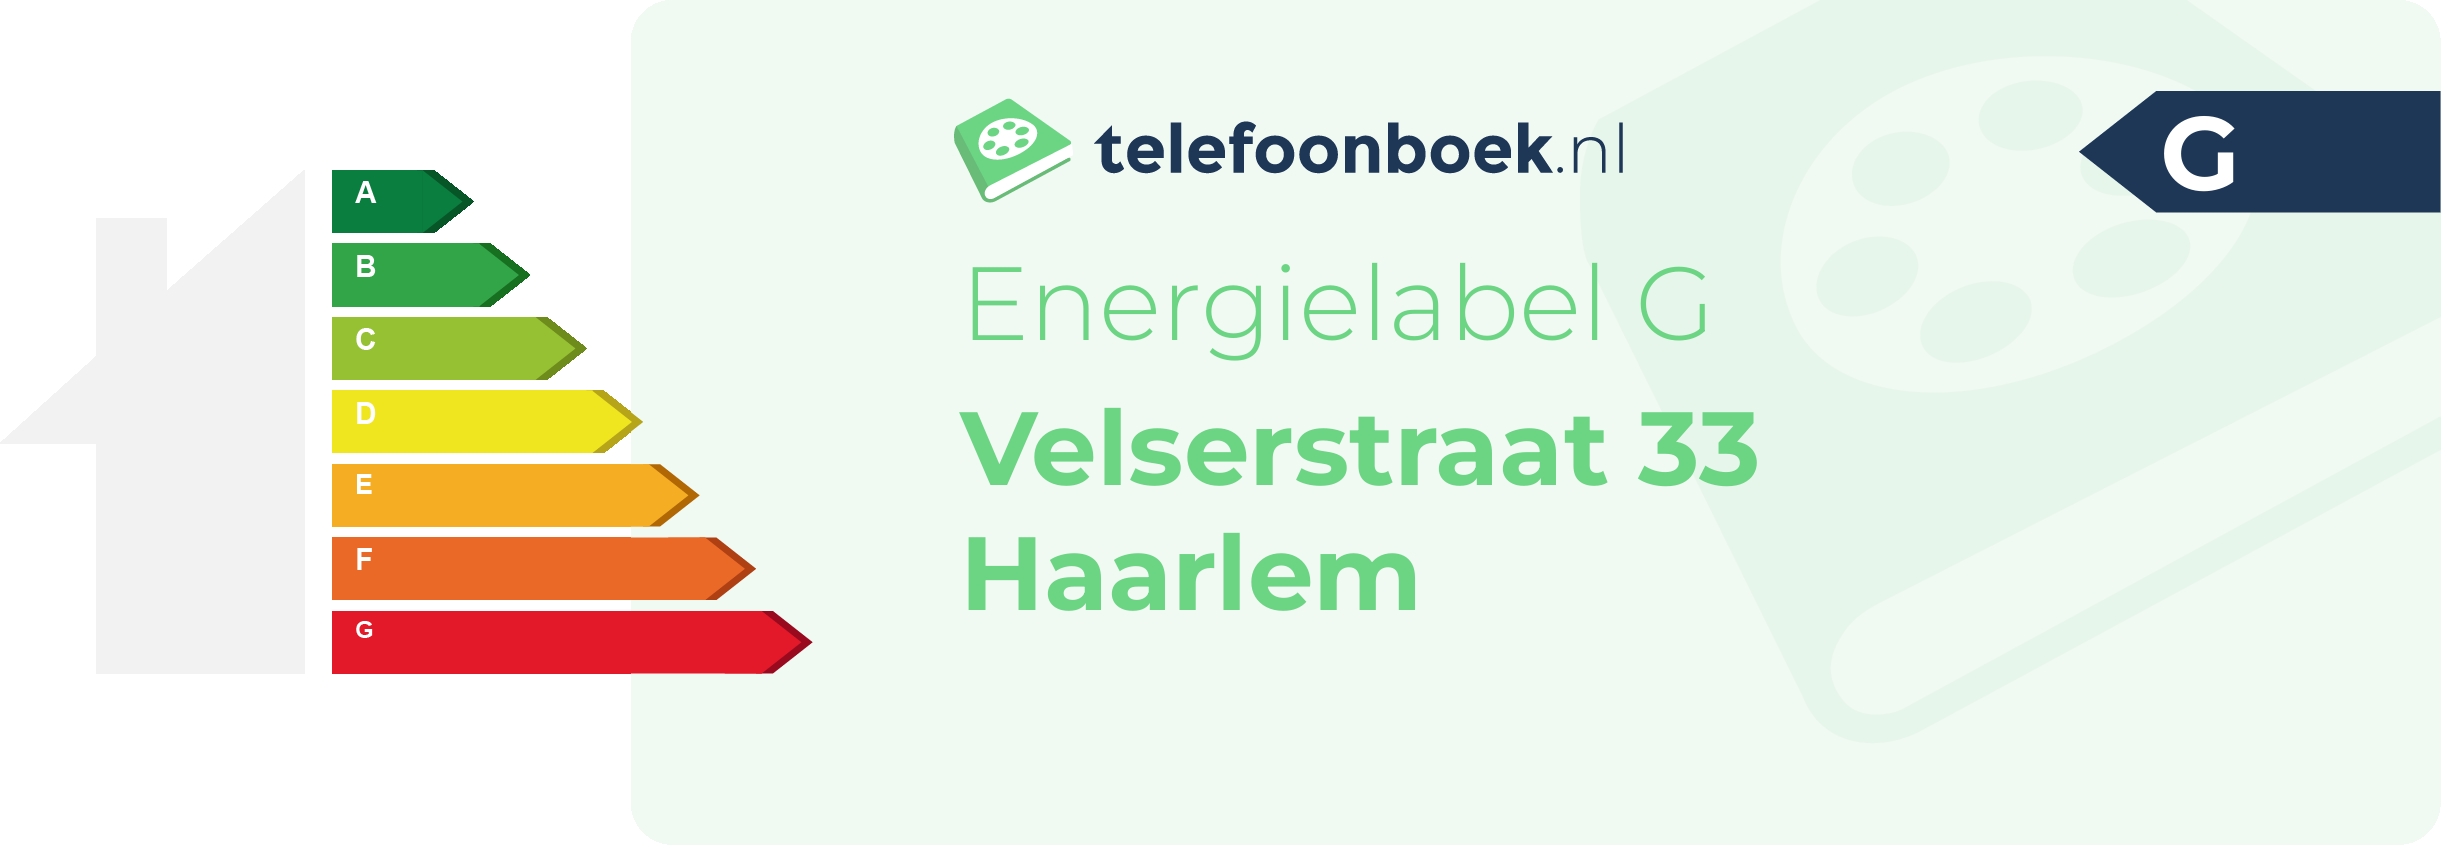 Energielabel Velserstraat 33 Haarlem